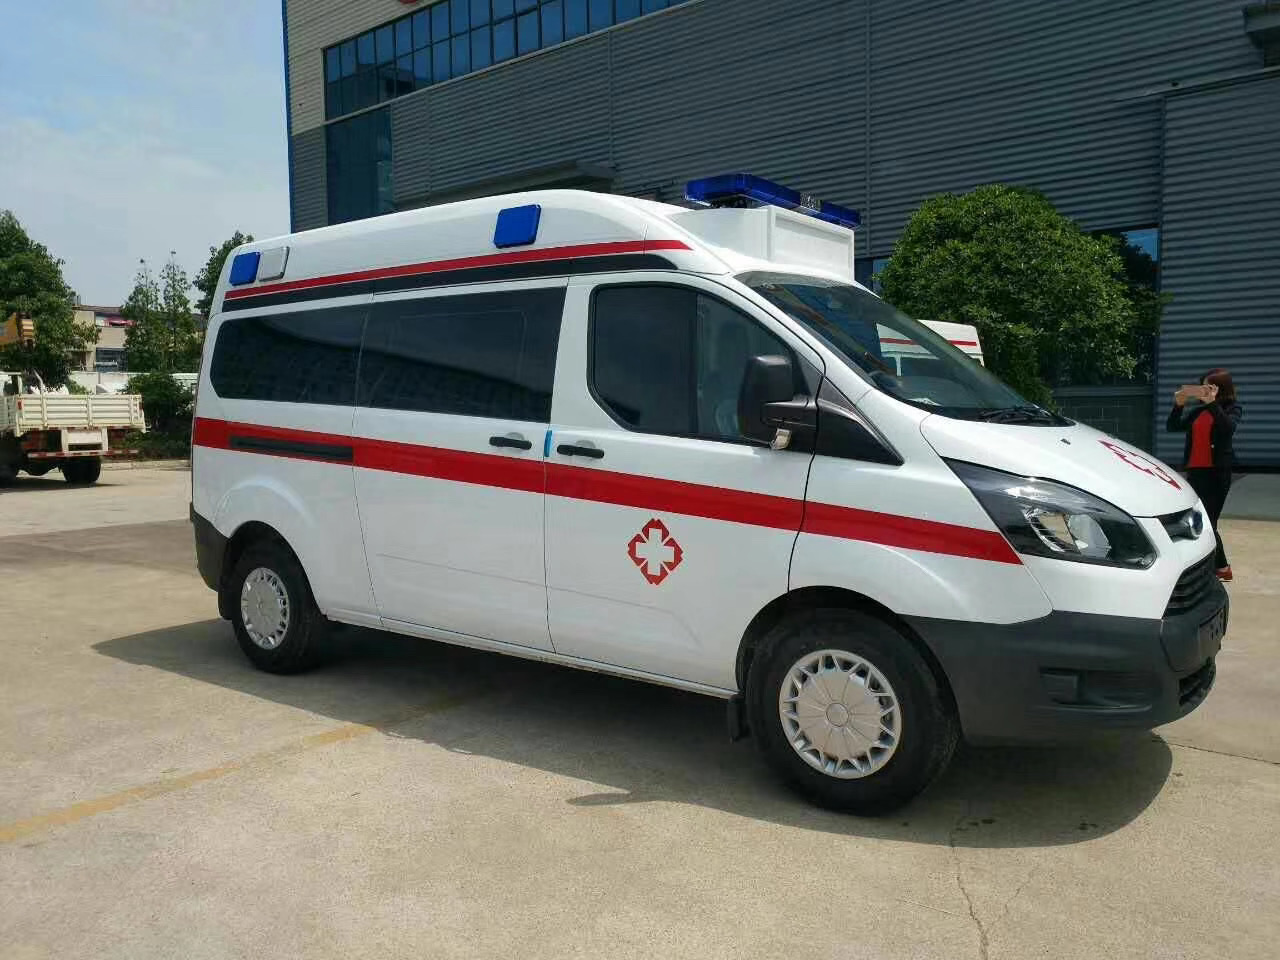 志丹县出院转院救护车